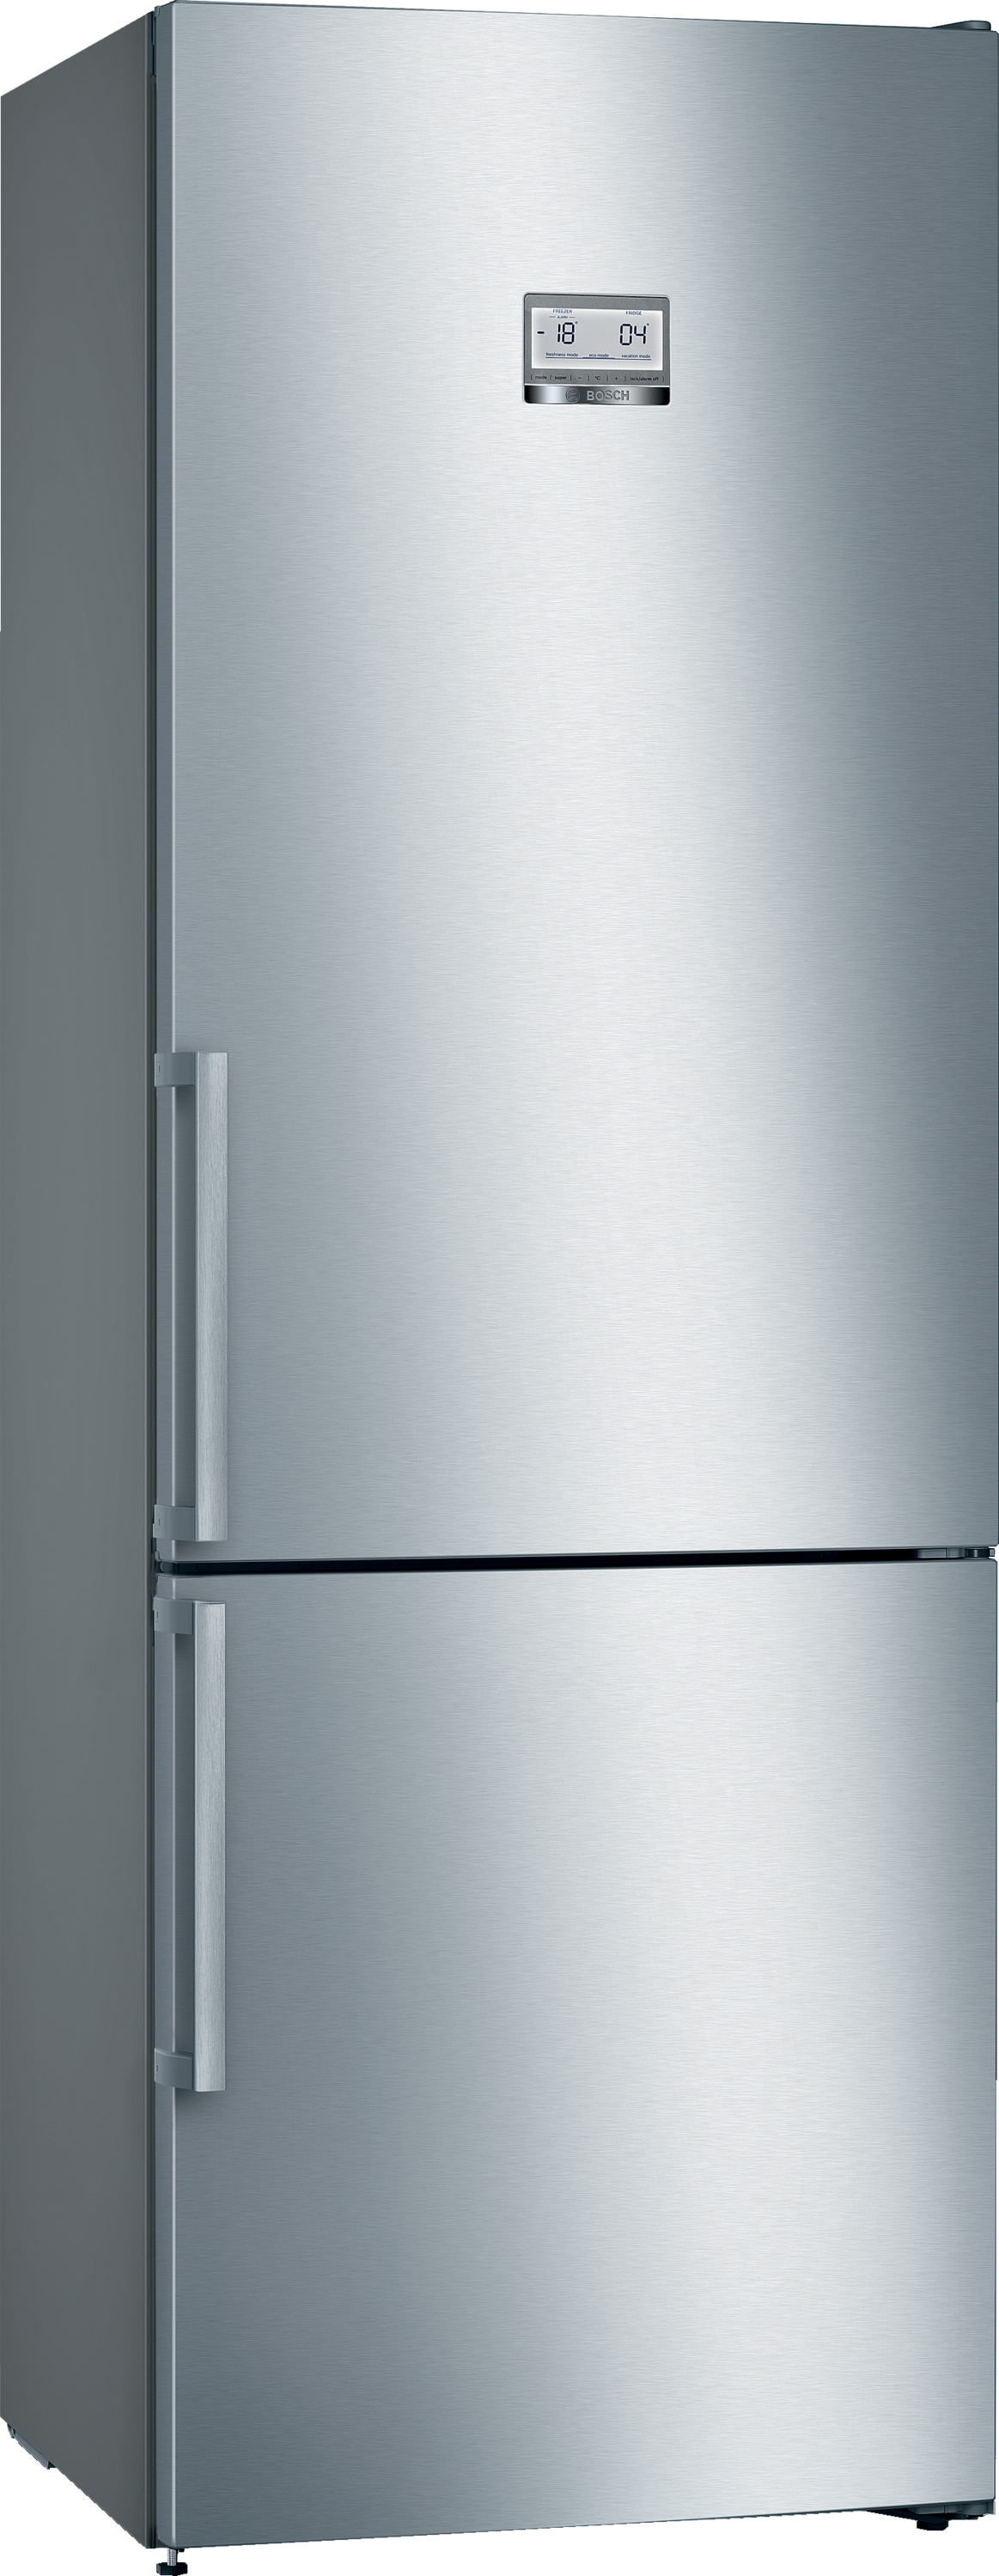 KGN49AIEQ Combină frigorifică independentă 203 x 70 cm Inox AntiAmprentă, 5 ANI GARANTIE. 438l, H 203 cm, NoFrost, Home Connect, Clasa  Energetica E